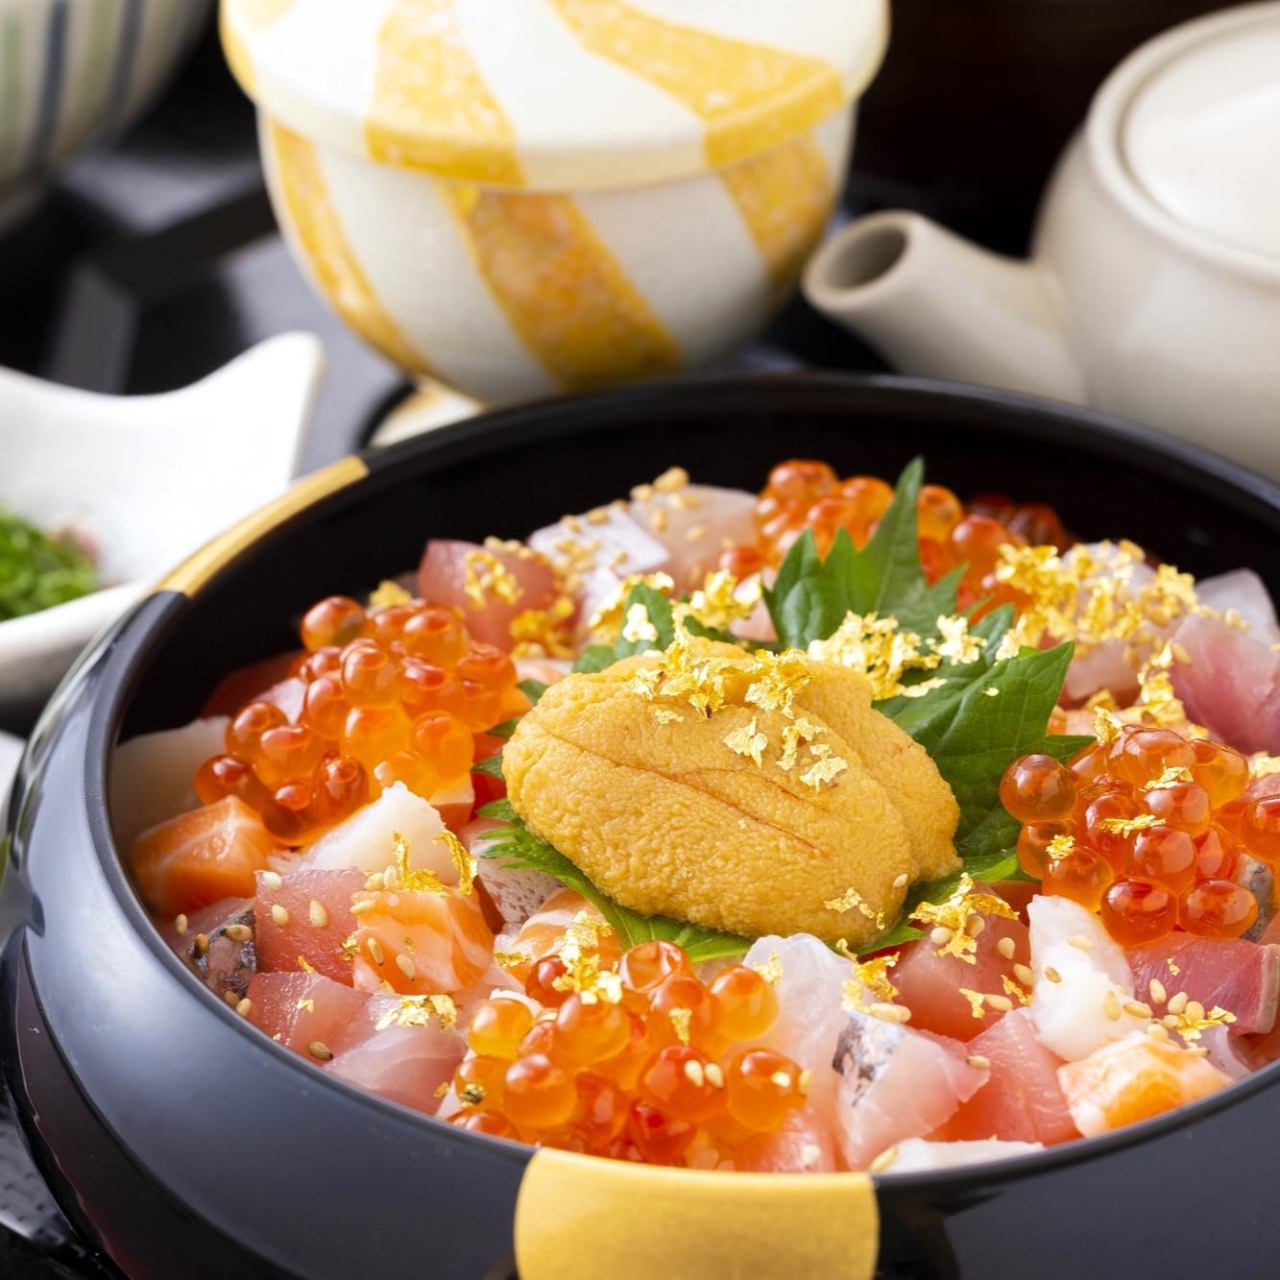 黒い丼に近江町市場の金沢近江町市場 旬彩和食 口福の「海鮮ひつまぶし」が盛られている